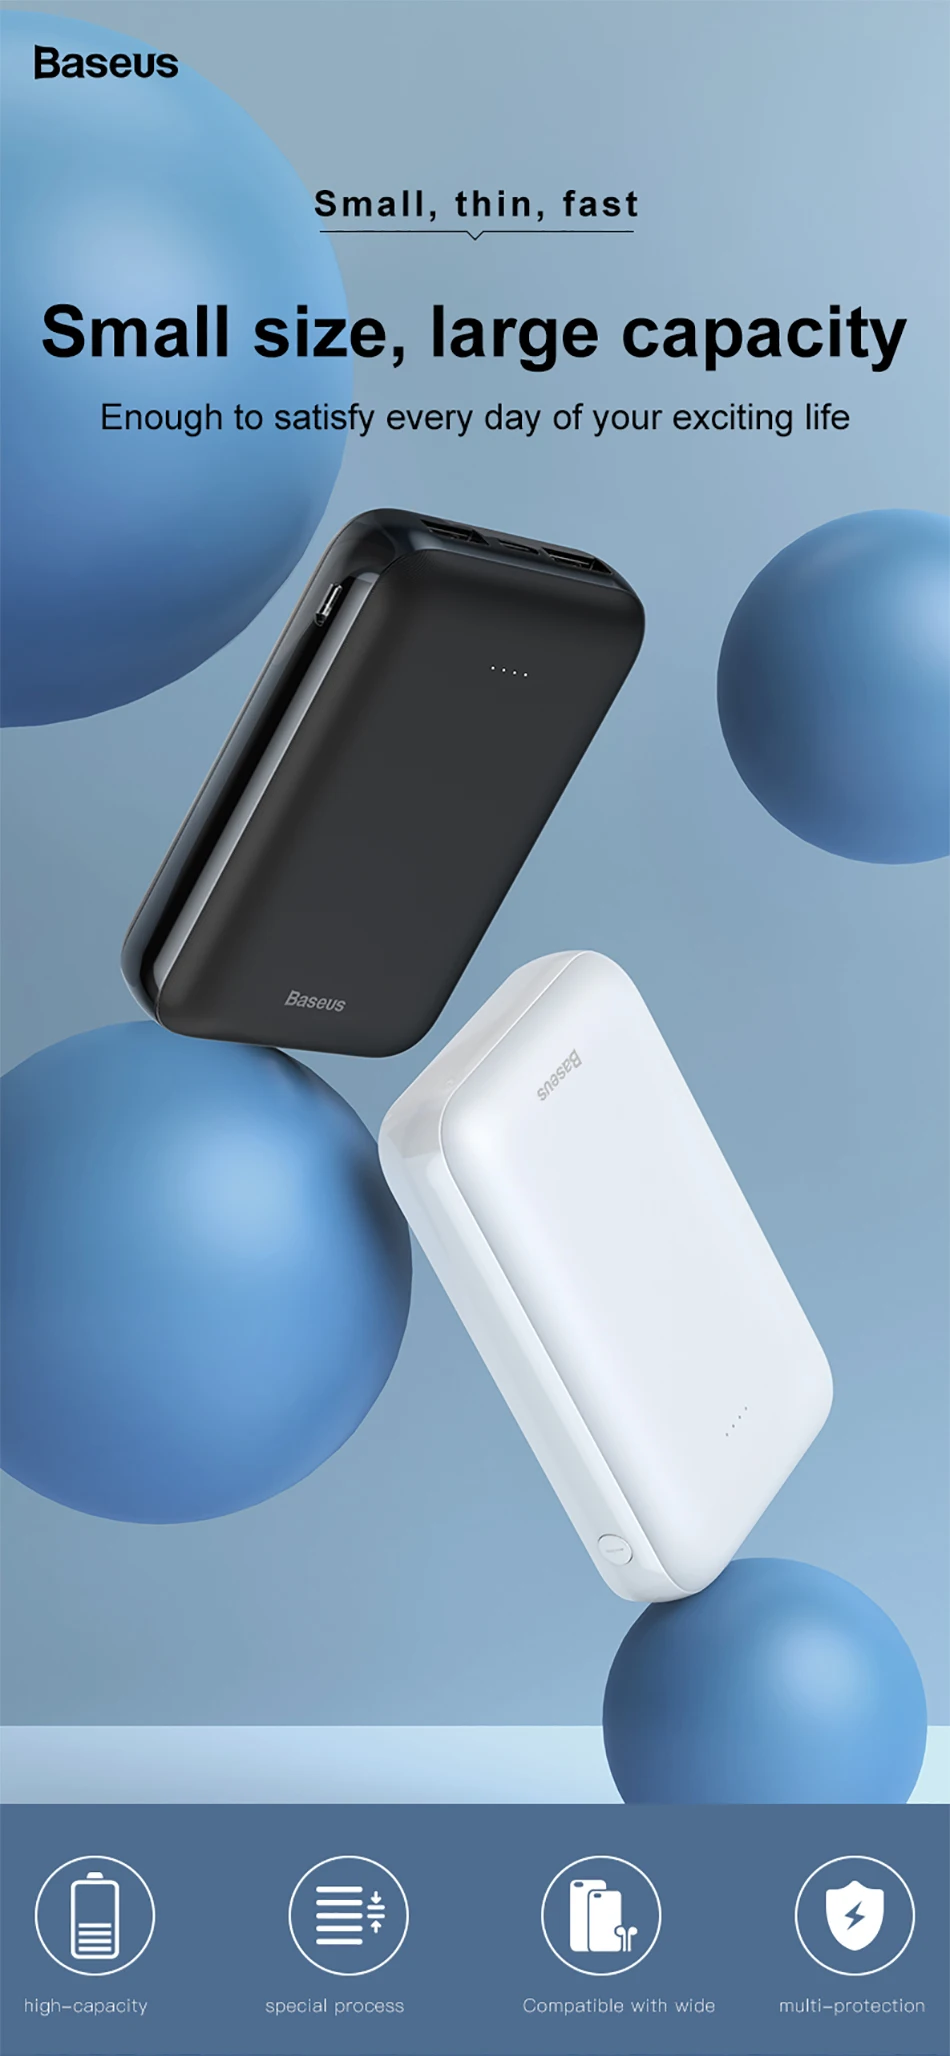 Baseus 10000 мАч Мини банк питания портативное USB зарядное устройство 10000 мАч банк питания для iPhone samsung Xiaomi внешний аккумулятор банк питания